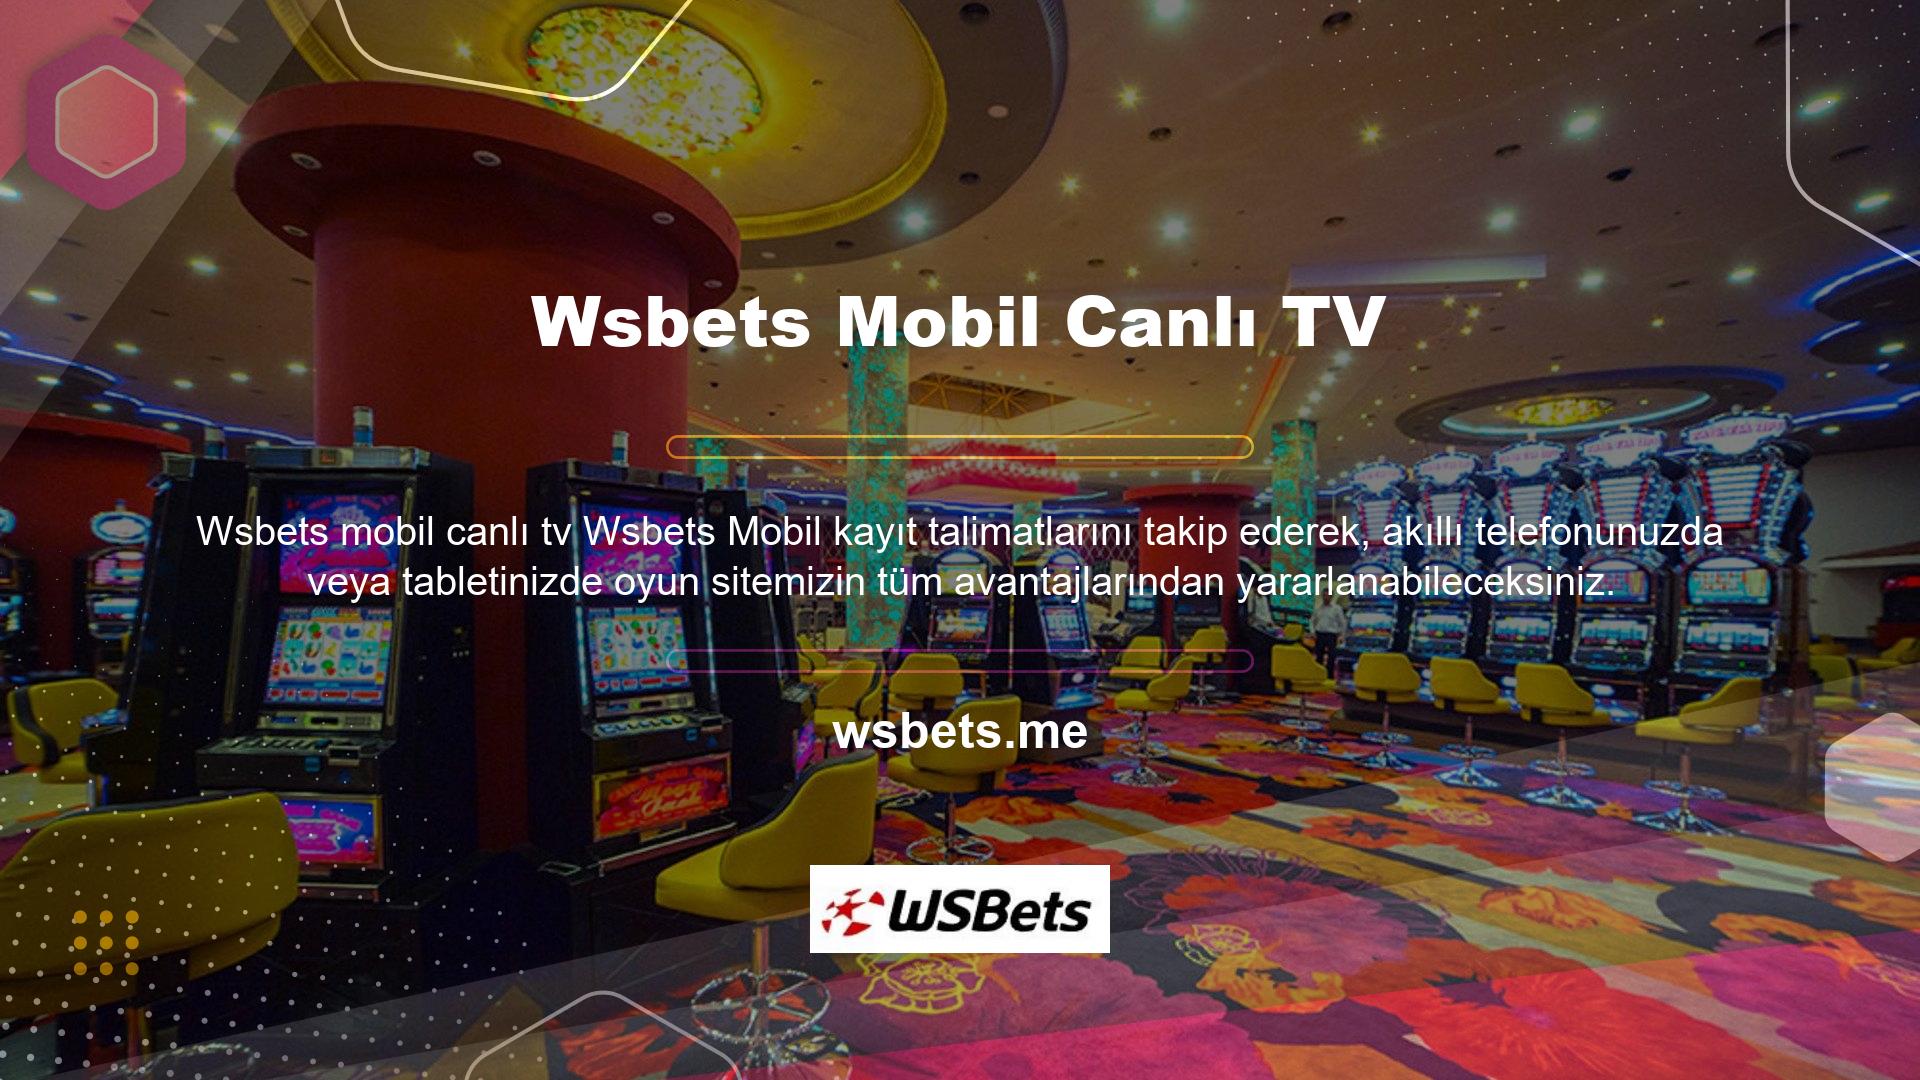 Üyelerimize spor bahisleri ve Wsbets Canlı TV mobil casino hizmetlerini basit ve kullanıcı dostu bir arayüz üzerinden sunuyoruz